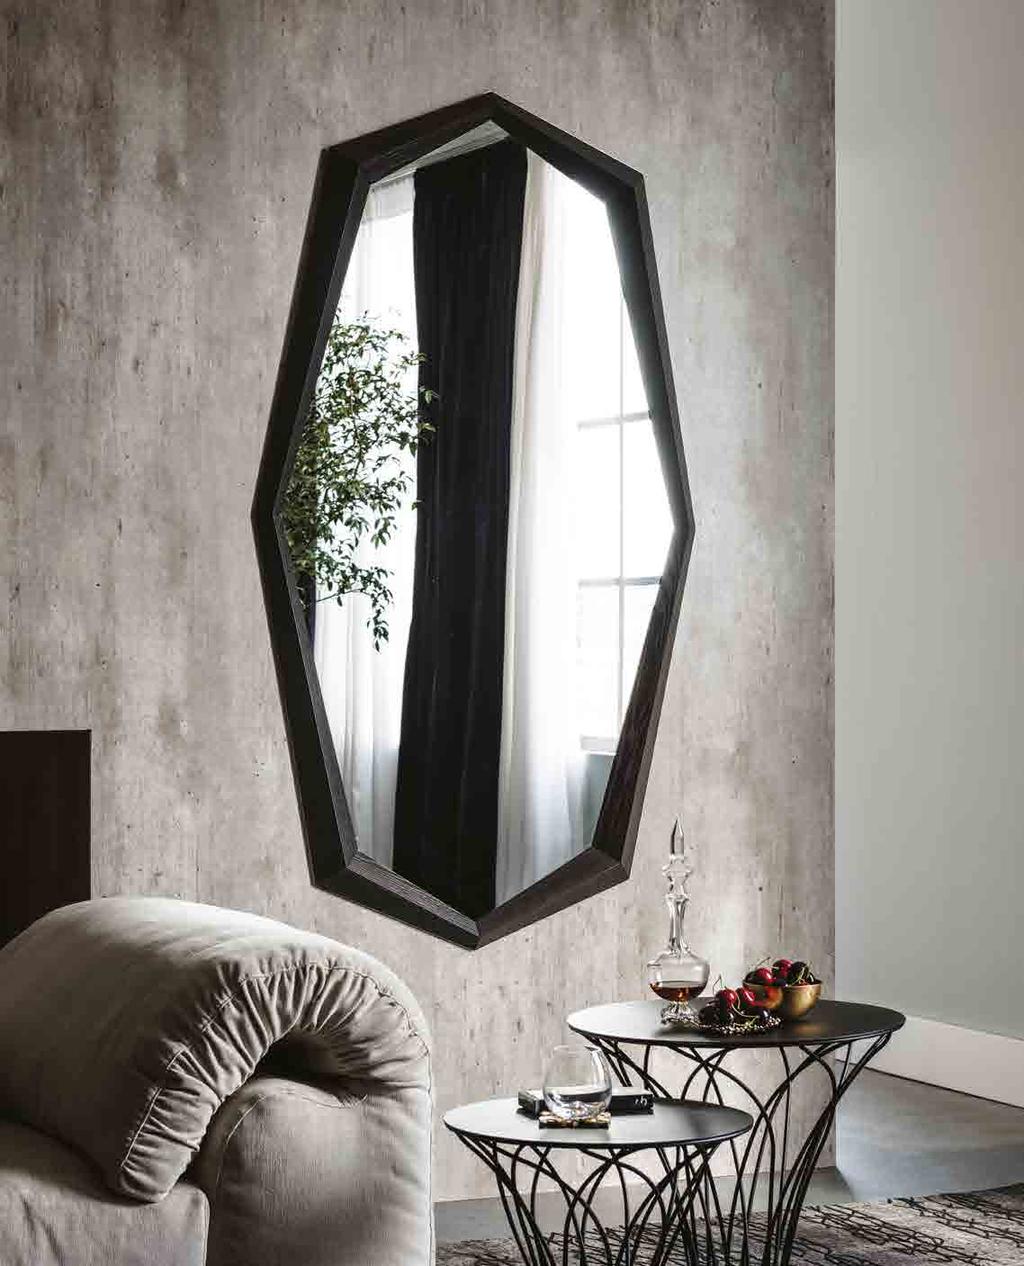 EMERALD WOOD Design Paolo Cattelan Specchio da parete con cornice in noce Canaletto, rovere bruciato o frassinio laccato poro aperto nero opaco.